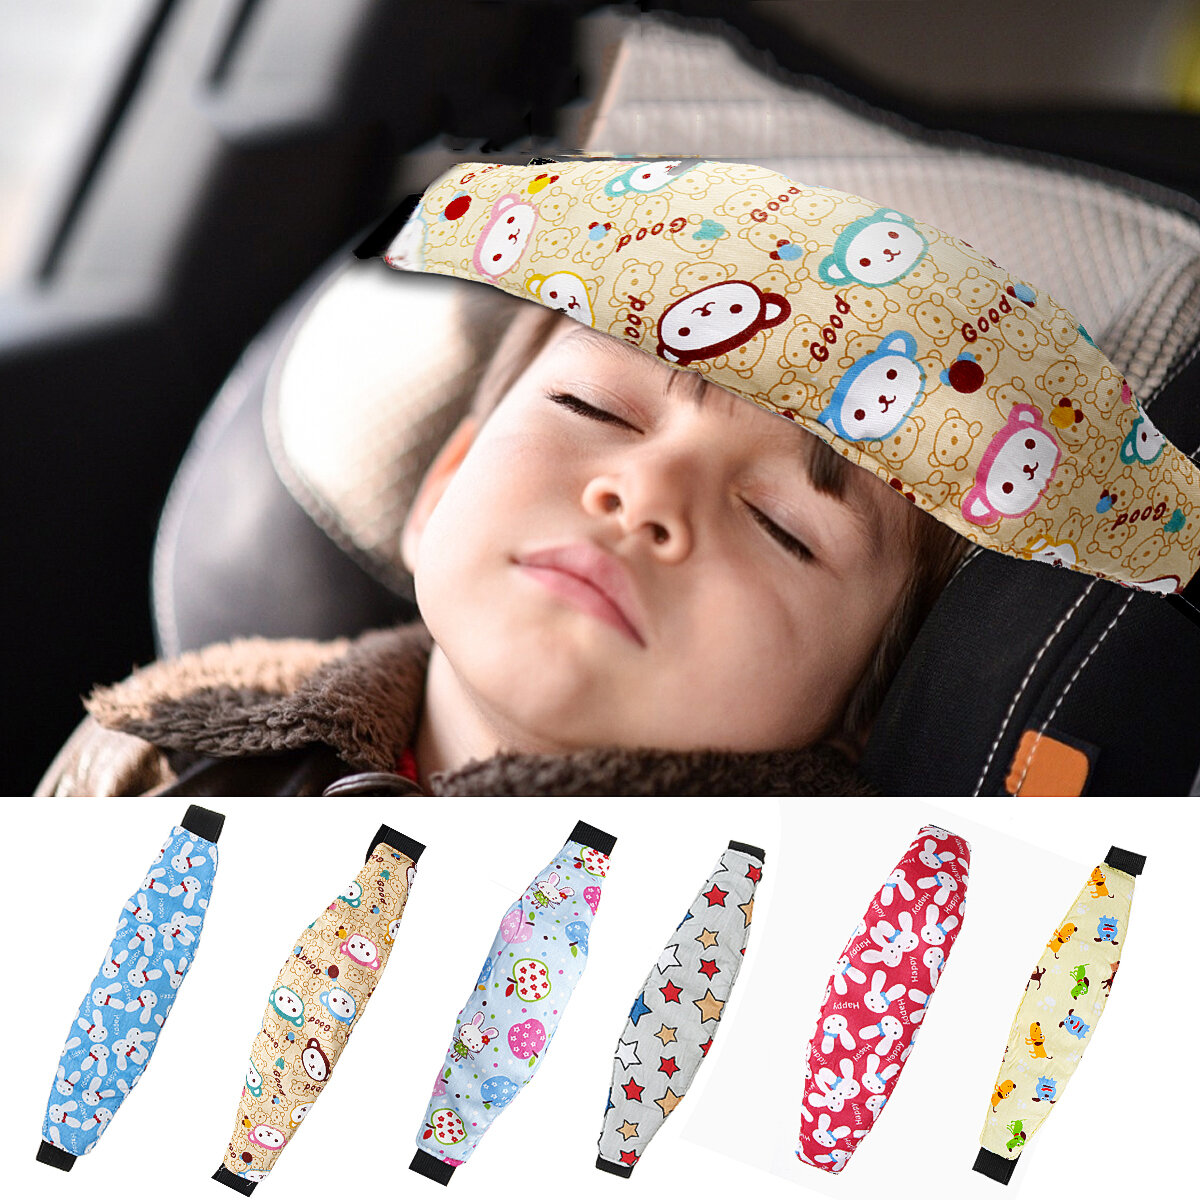 Baby head support stroller sleep nap aid safety strap car seat fastening belt